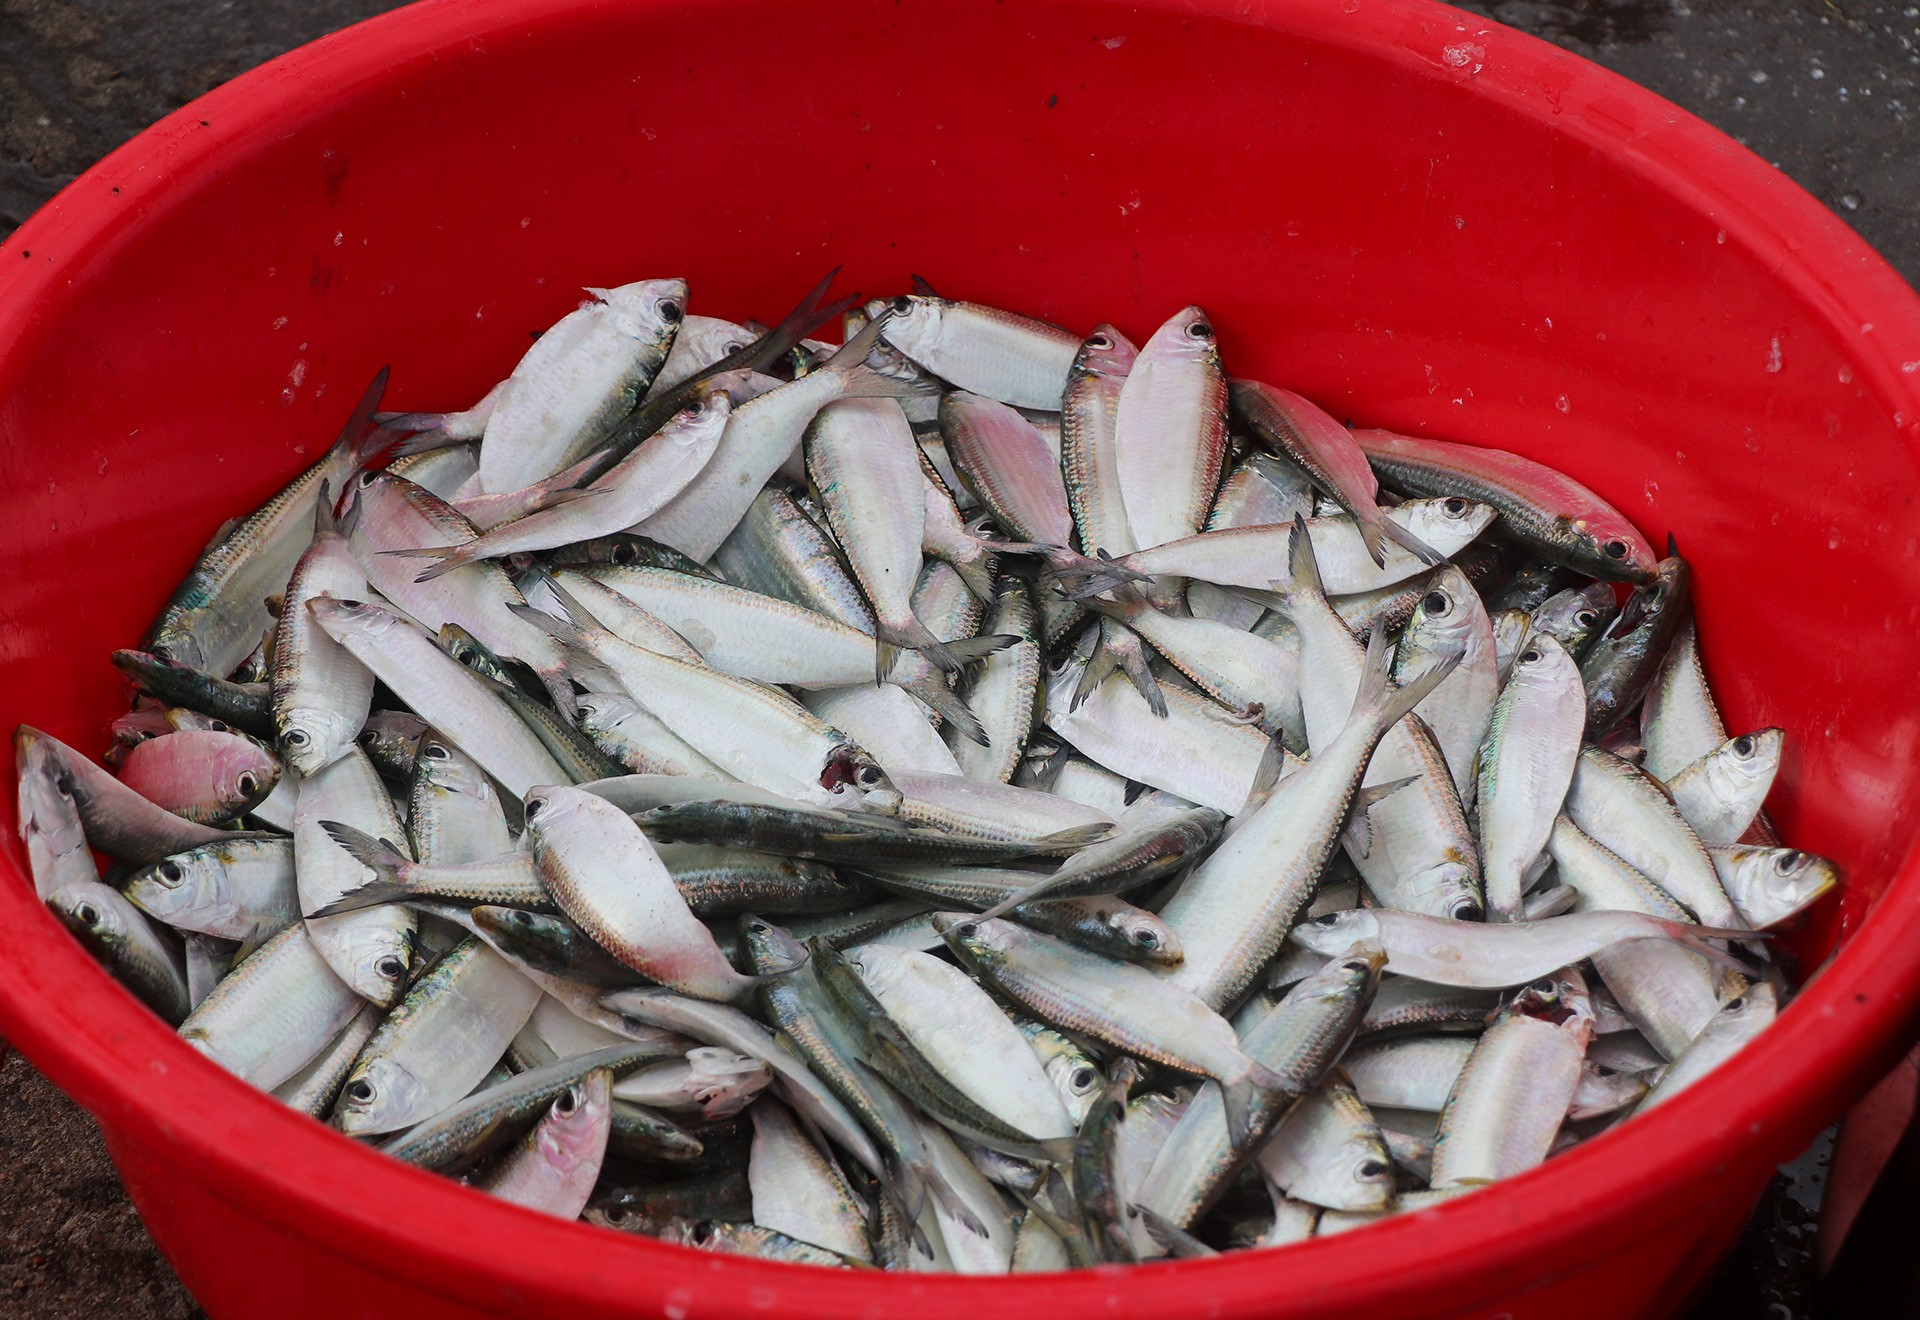 Nếu chuyến đi thuận lợi, ngư dân có thể thu được hàng tấn cá. Theo họ, mỗi kg cá trích dao động từ 15.000 đồng – 35.000 đồng tùy vào mùa.